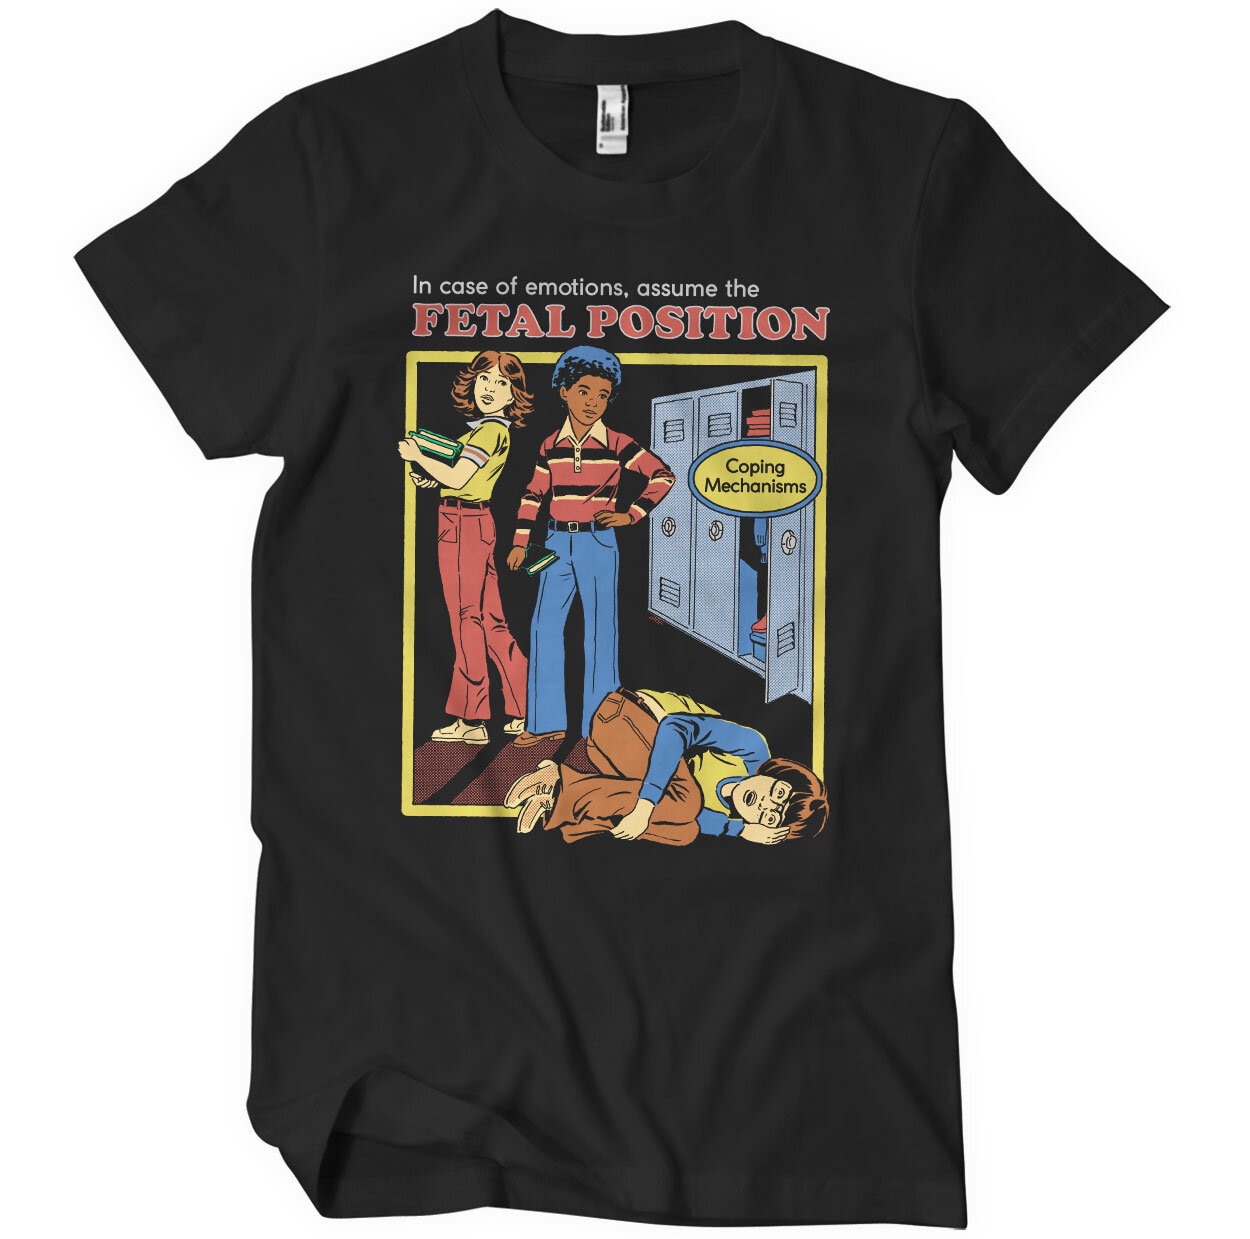 The Fetal Position T-Shirt